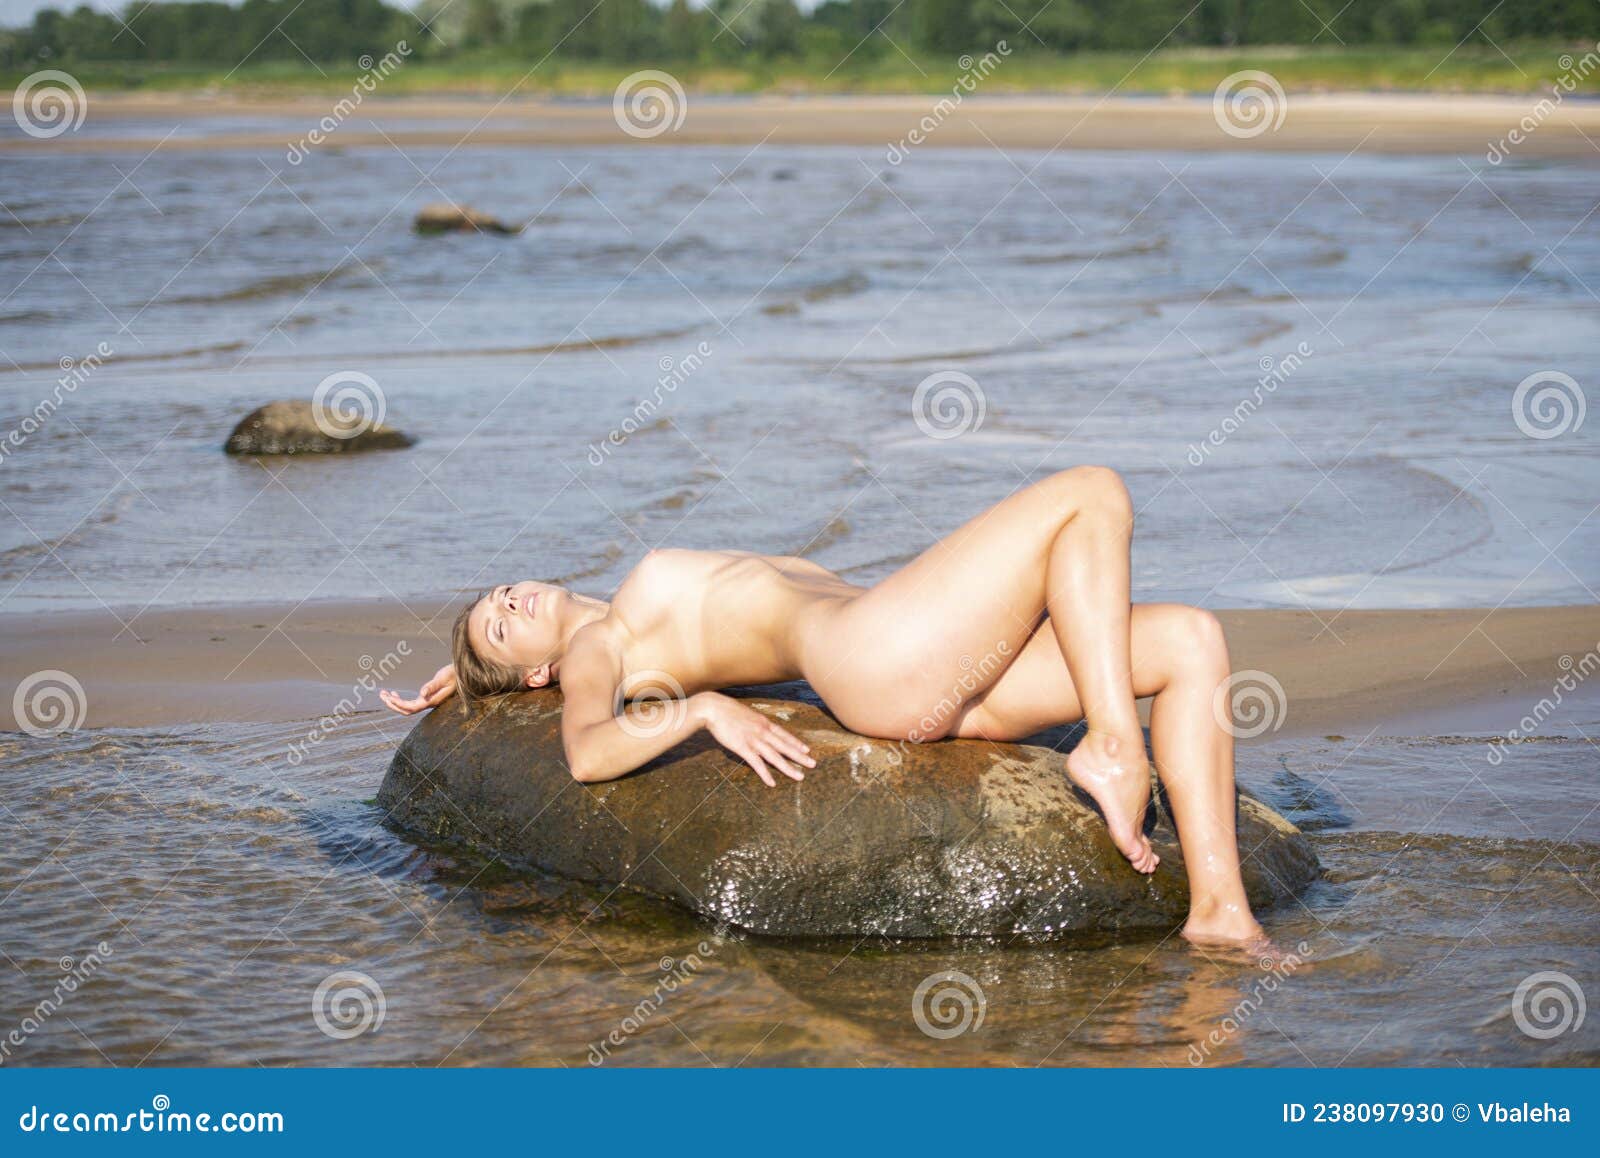 голая женщина на камне